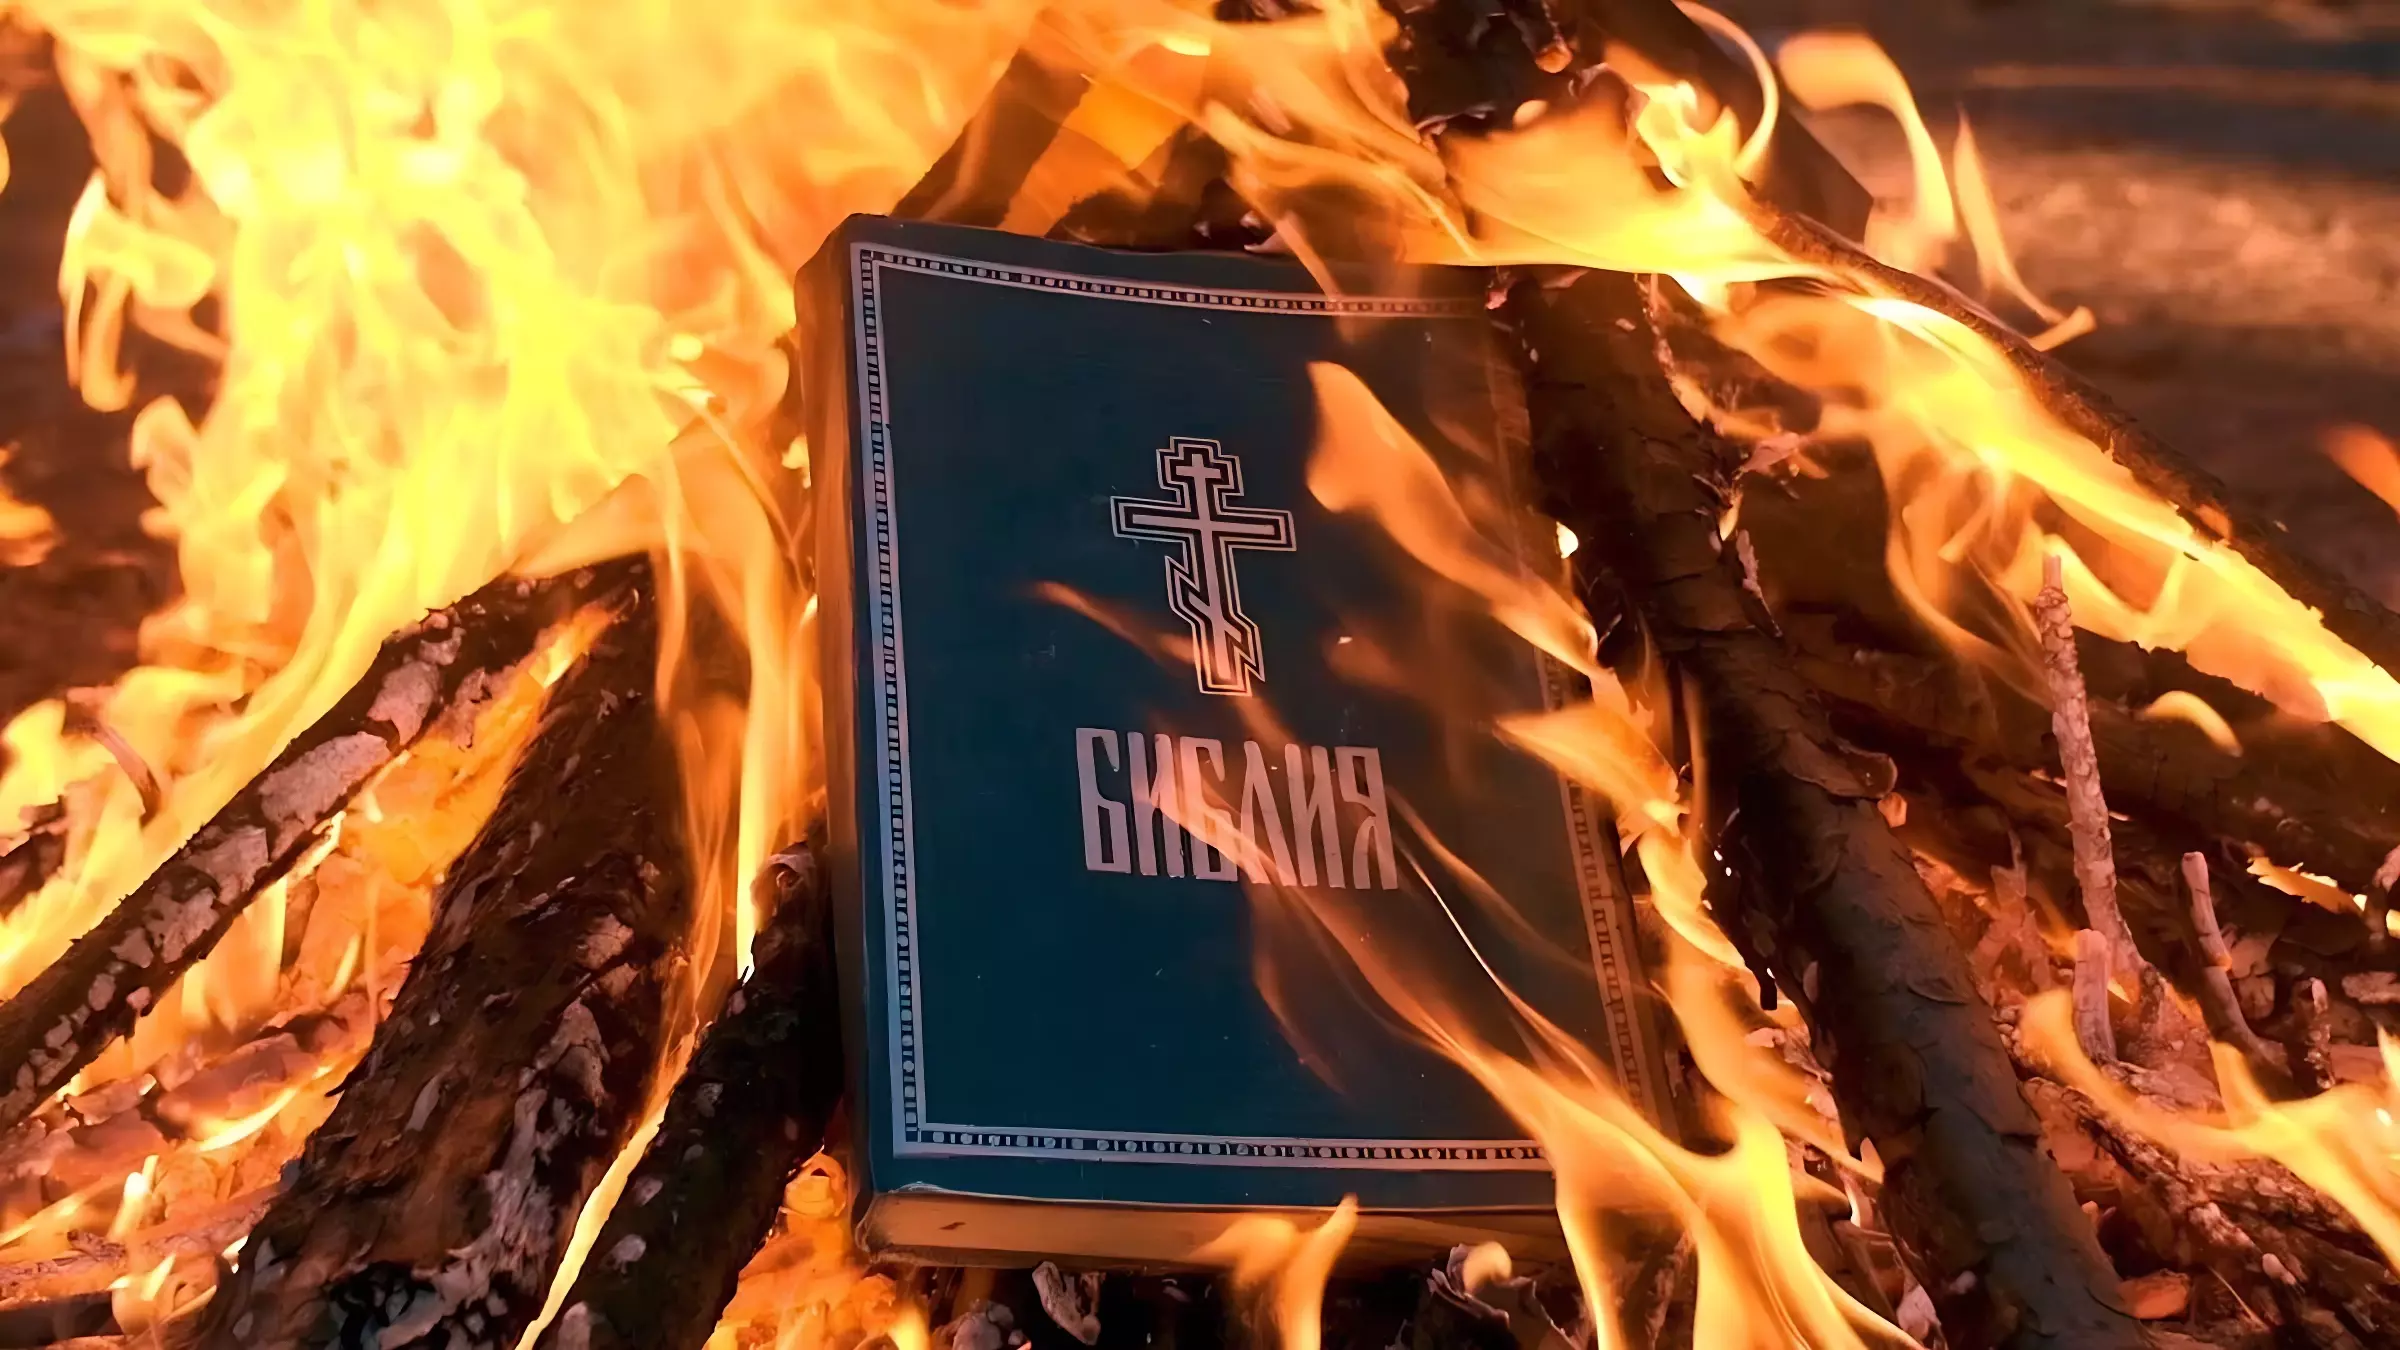 В Ставрополье за демонстративное сожжение Библии задержали троих юношей В Ставрополье за демонстративное сожжение Библии задержали троих юношей